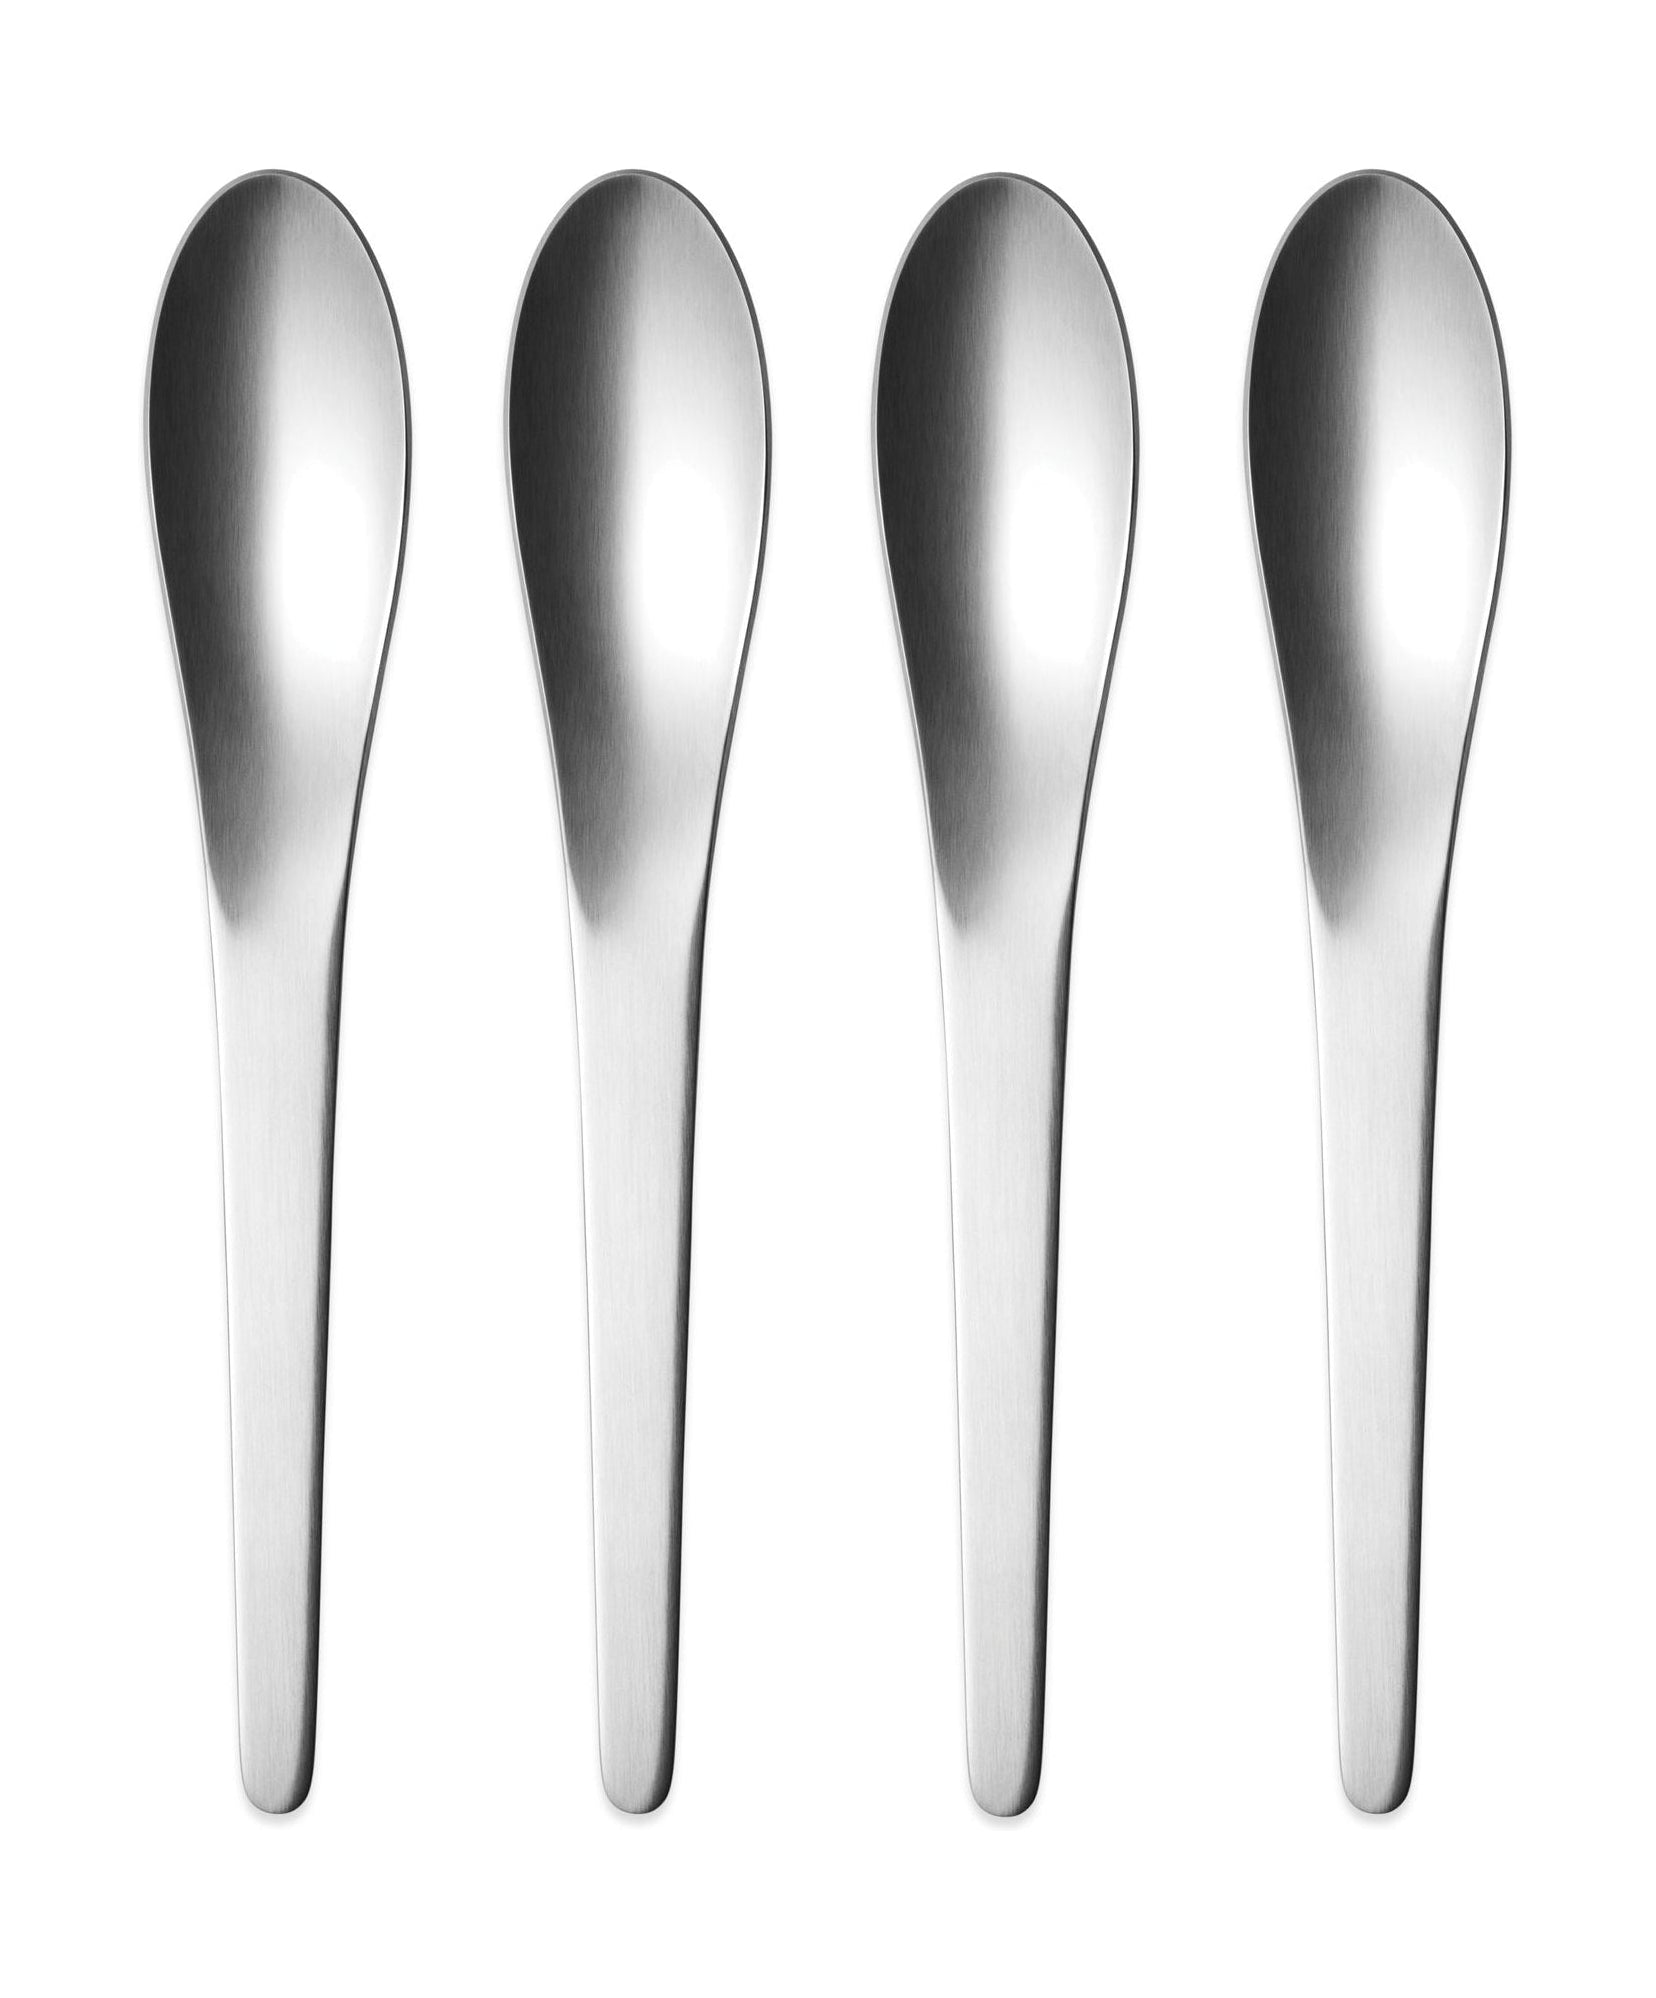 Georg Jensen Arne Jacobsen Dessert Spoon, sett med 4